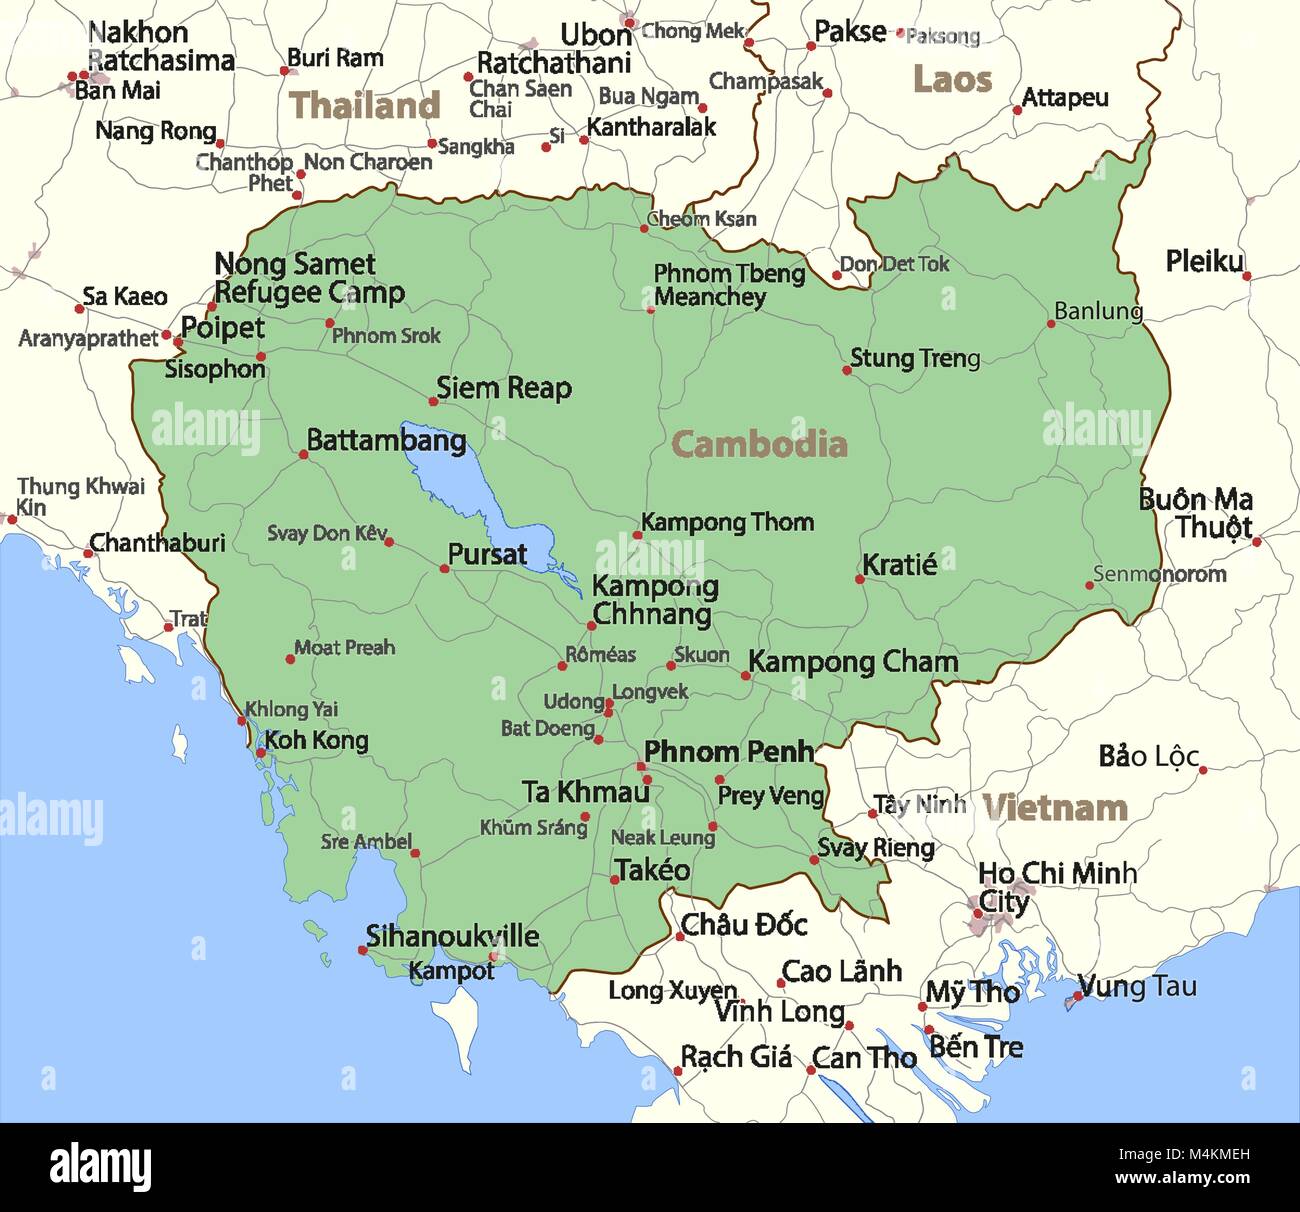 Mappa di Cambogia. Mostra i confini, zone urbane, nomi di località e strade. Le etichette in inglese dove possibile. Proiezione: proiezione di Mercatore. Illustrazione Vettoriale